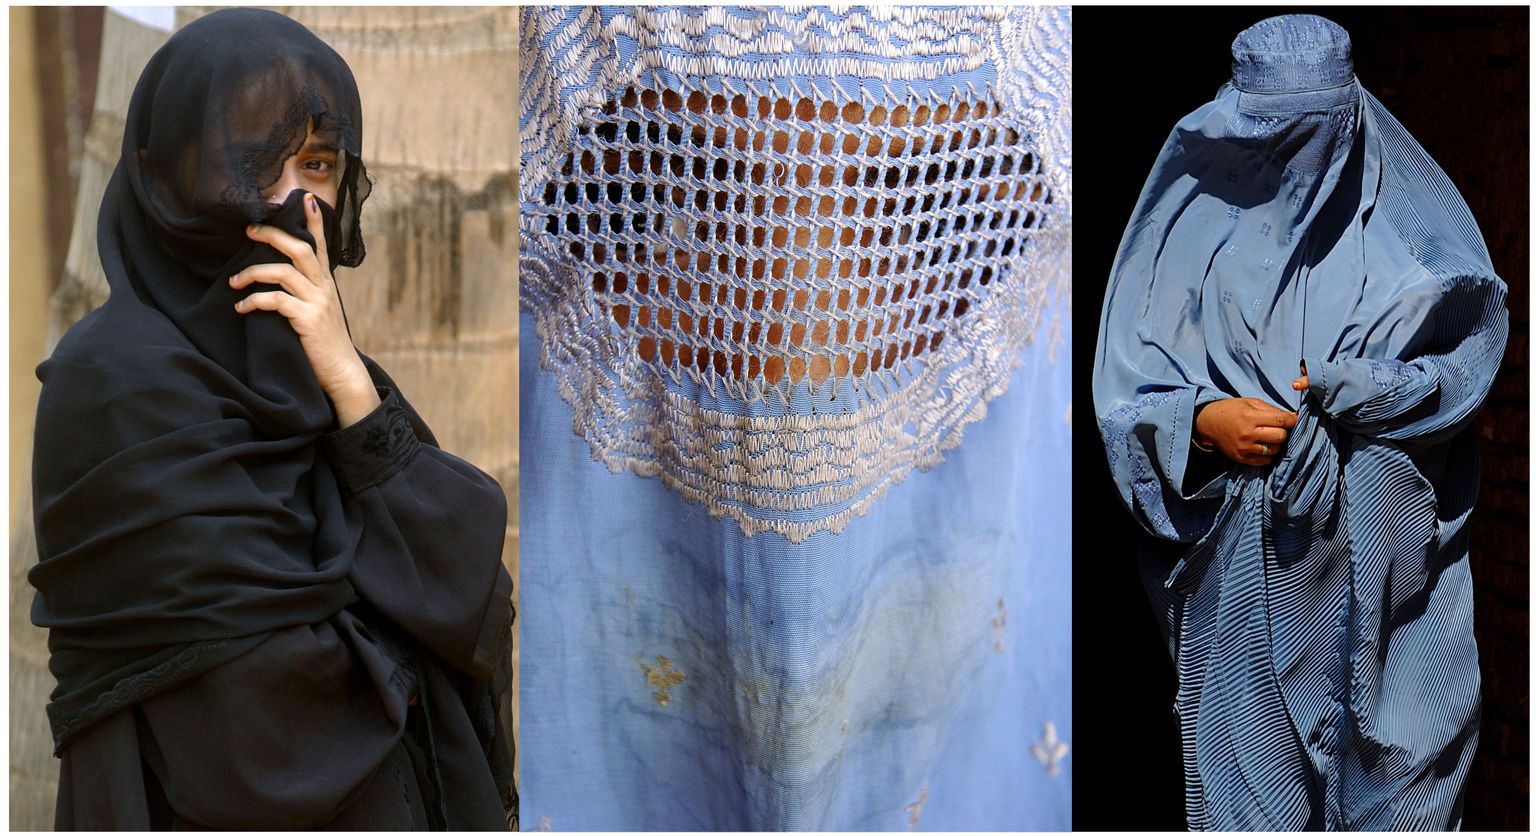 Palju kõneainet tekitanud burka